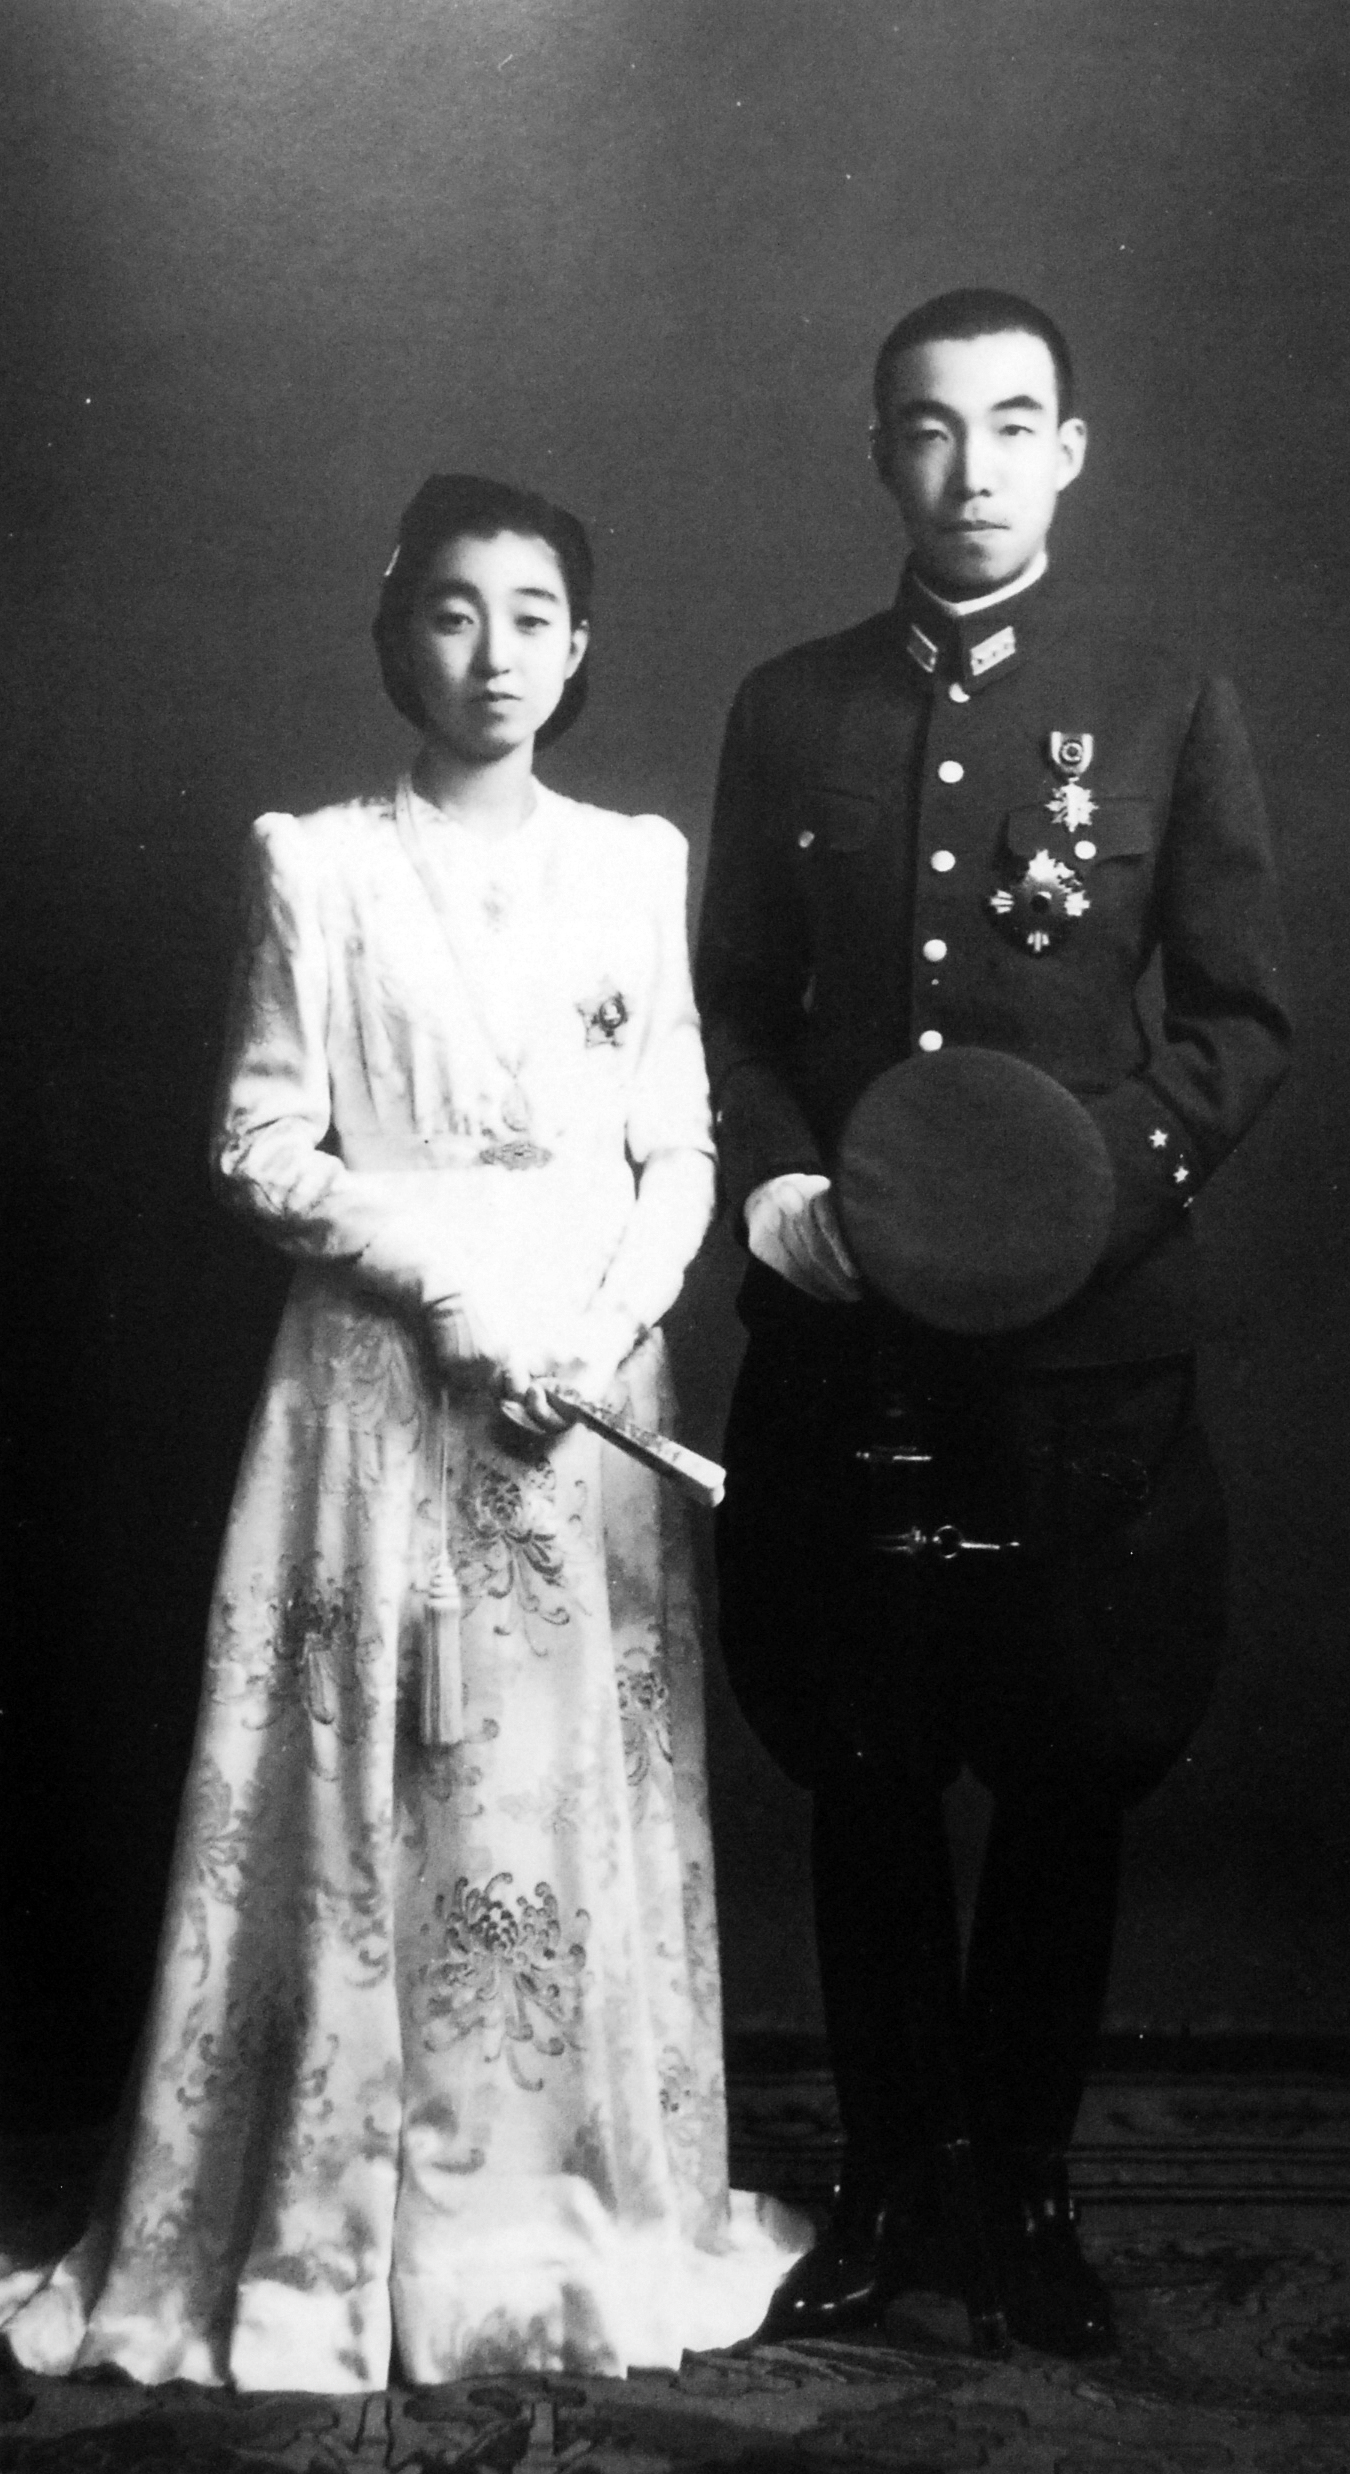 Higashikuni-no-miya 1943 Wedding